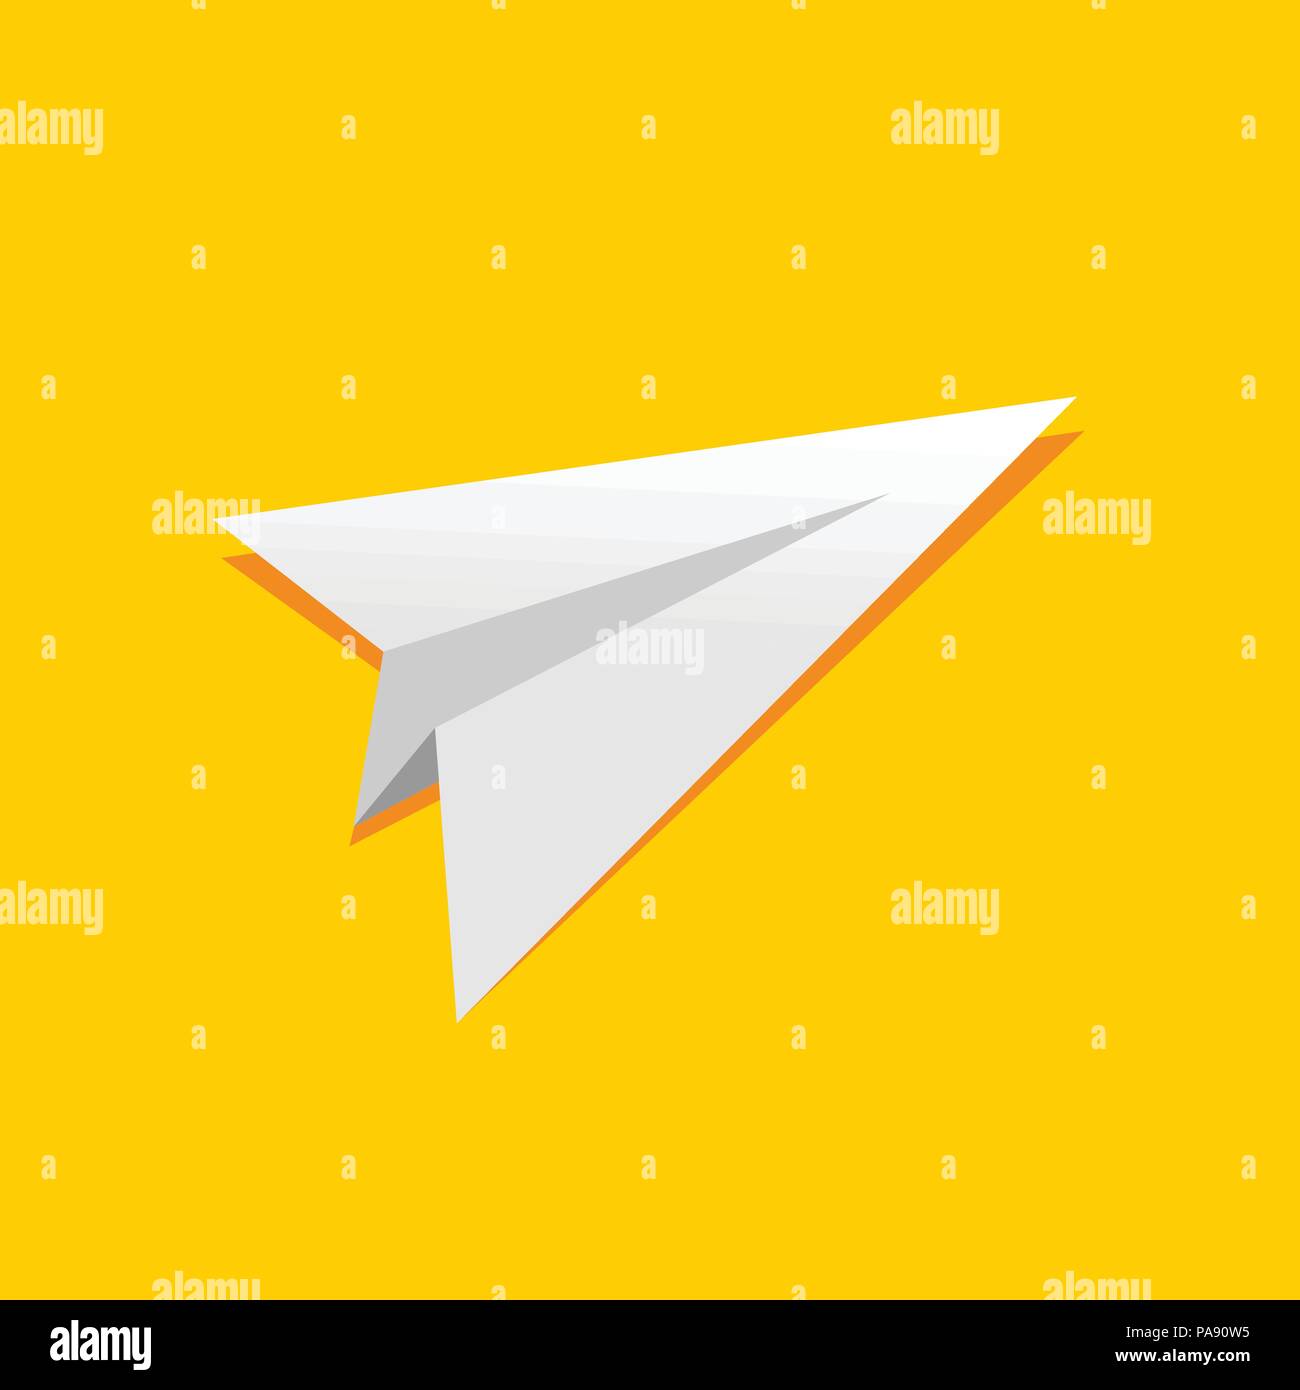 Avion en papier plié simple illustration jaune symbole vecteur modèle de conception de logo graphique Illustration de Vecteur